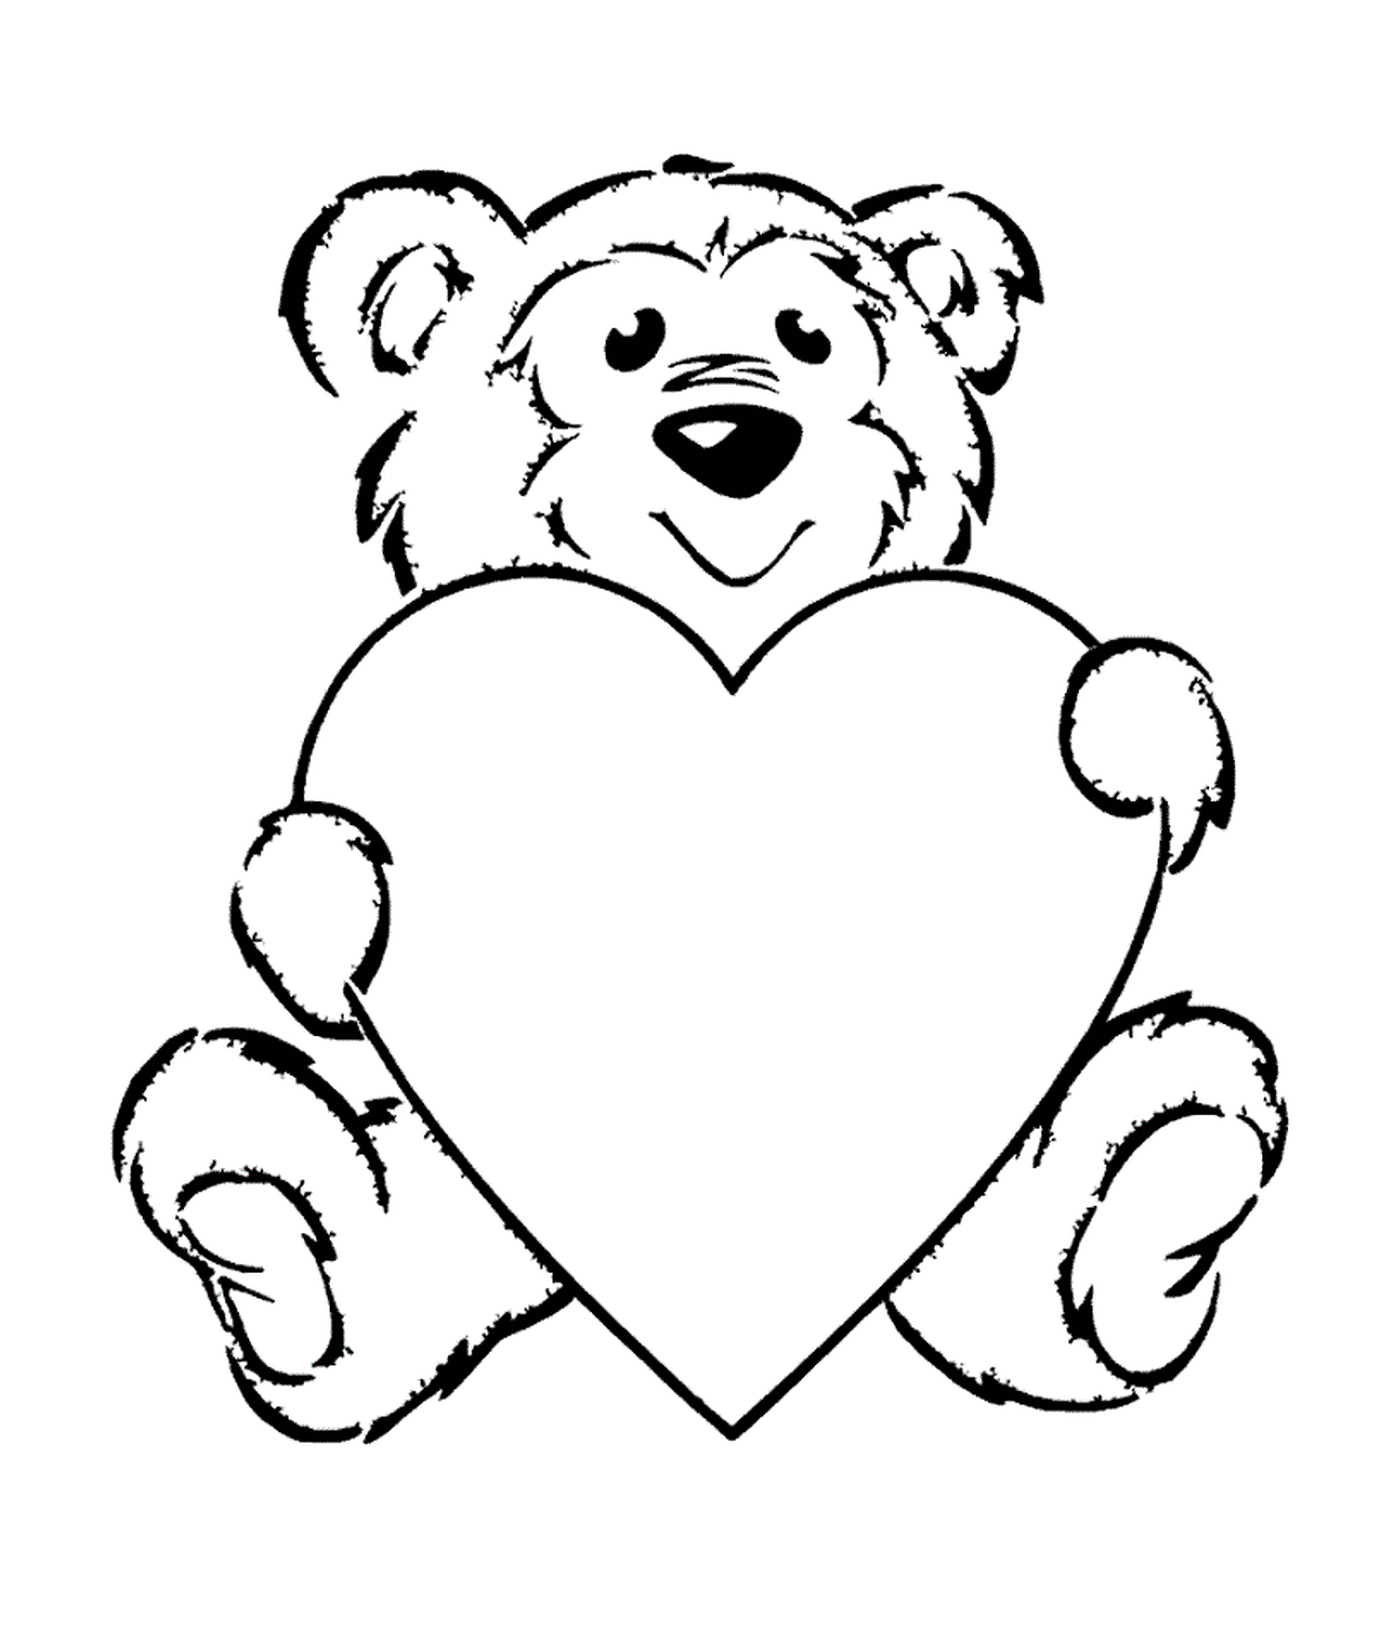  Un orsacchiotto che tiene un cuore 